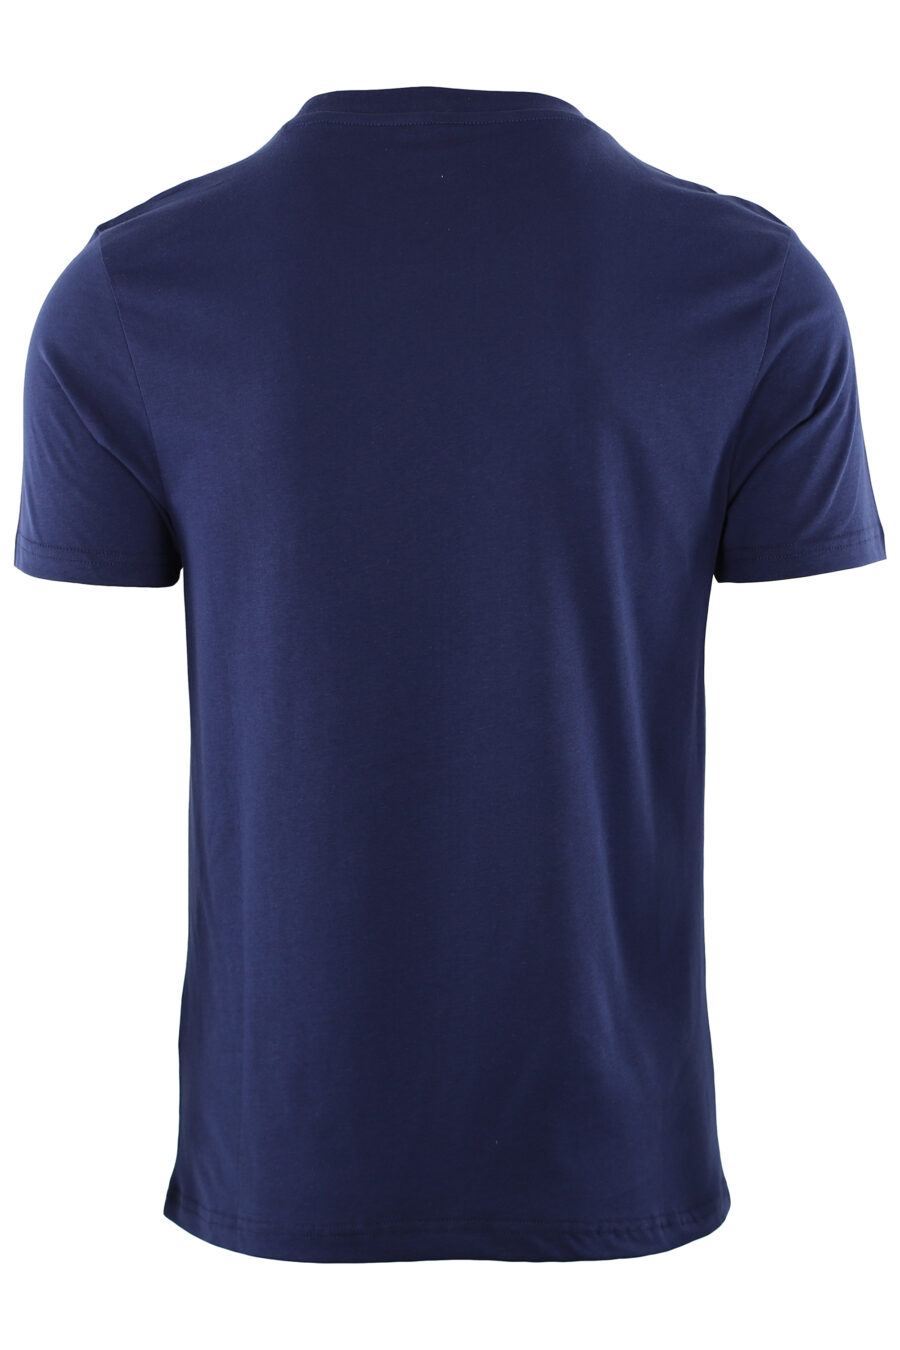 Camiseta azul con logotipo en cinta hombros - IMG 7413